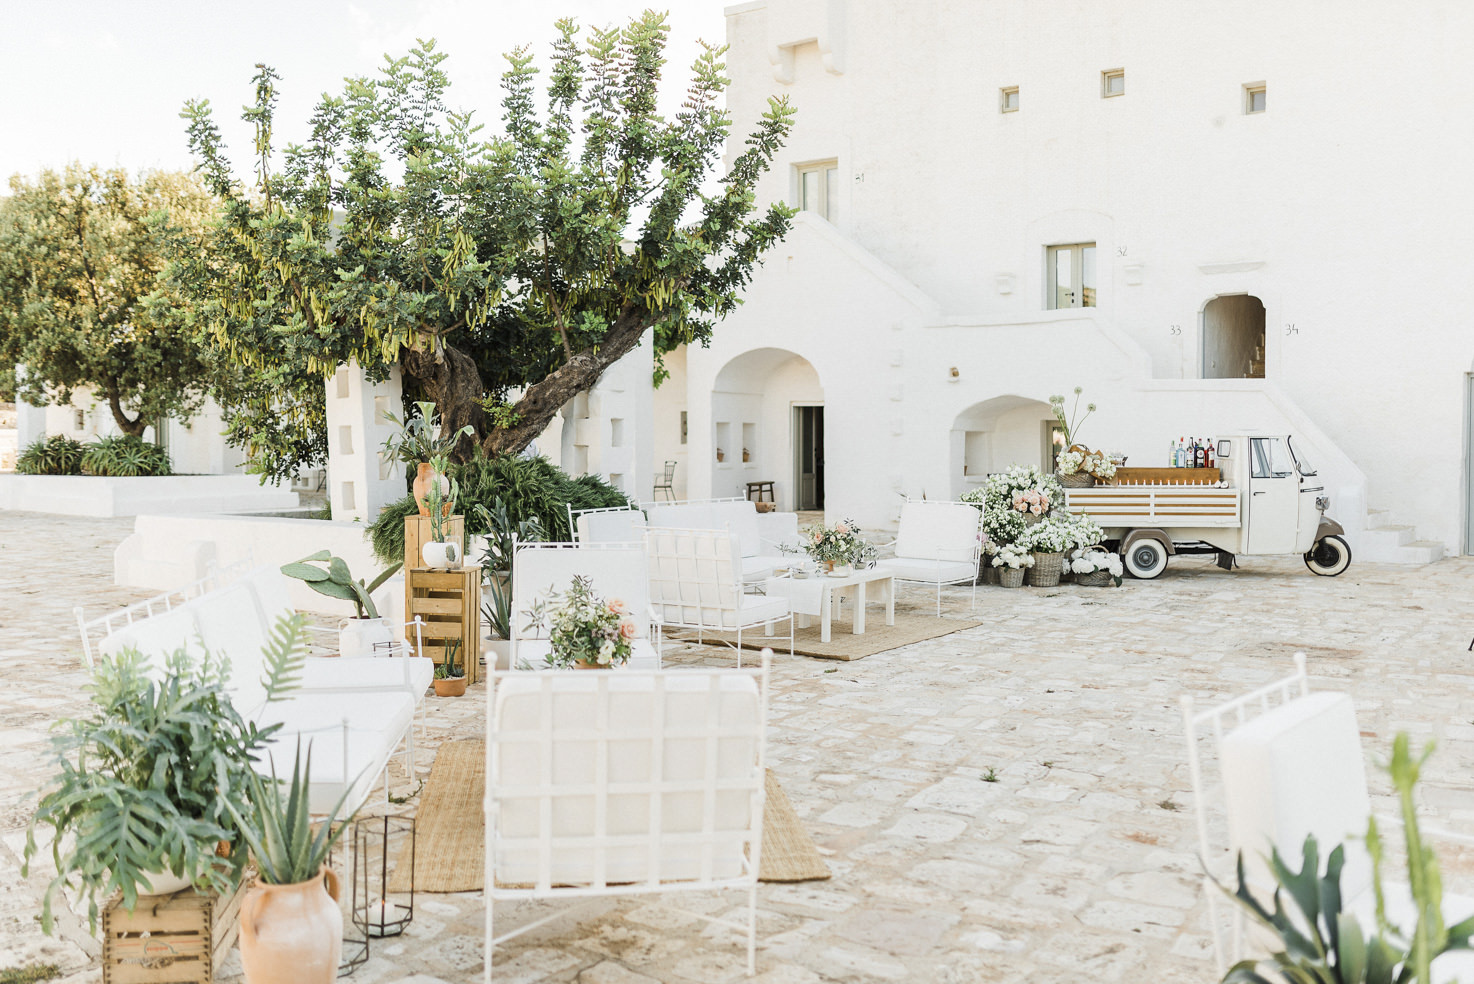 Masseria for weddings in Puglia